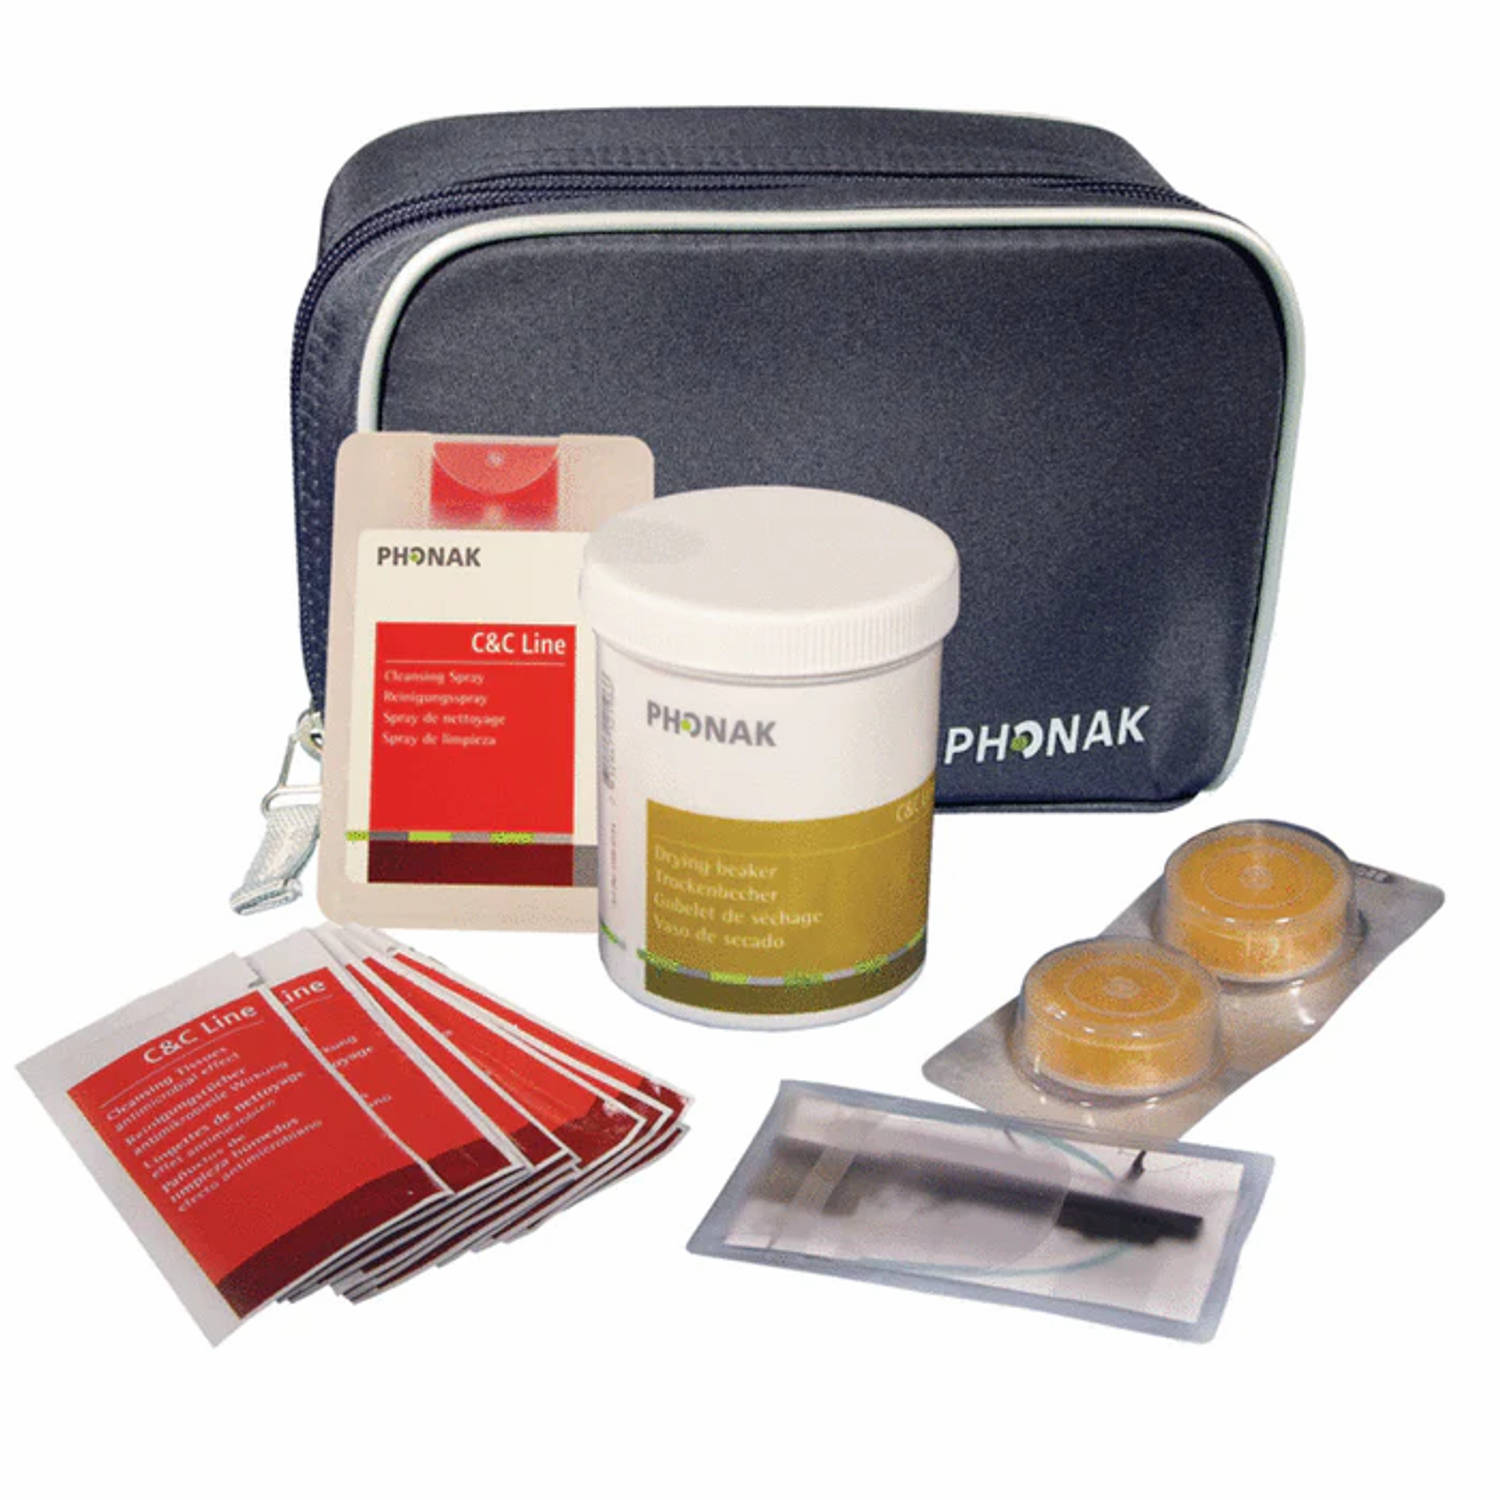 Phonak C&C Kit 2 - Reiniging, desinfectie en verzorgingsset voor in het oor en achter het oor horen hulpmiddelen